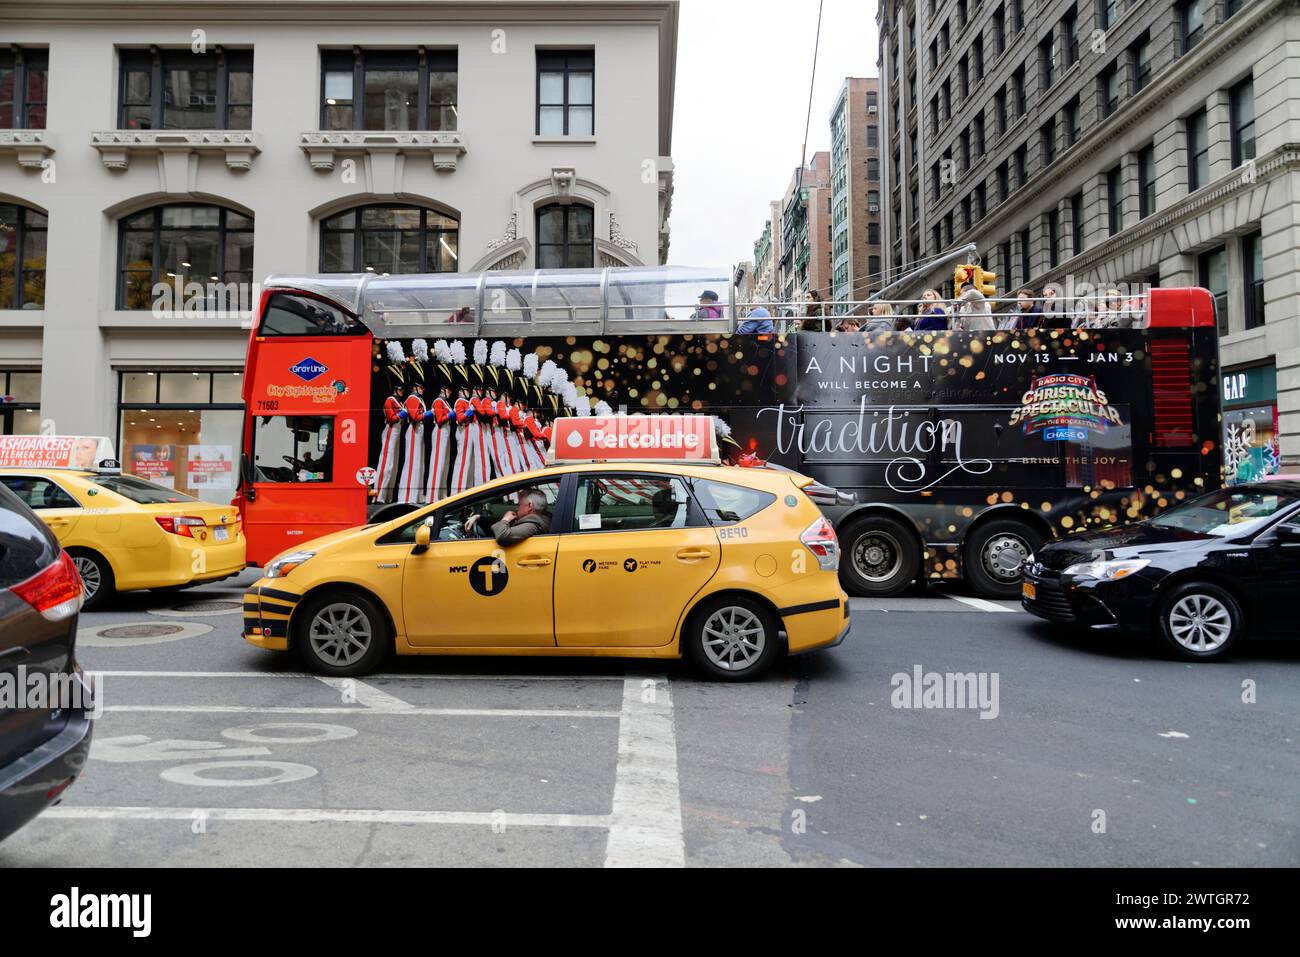 Un bus touristique annonçant un événement nocturne traverse New York, Manhattan, New York City, New York, États-Unis, Amérique du Nord Banque D'Images